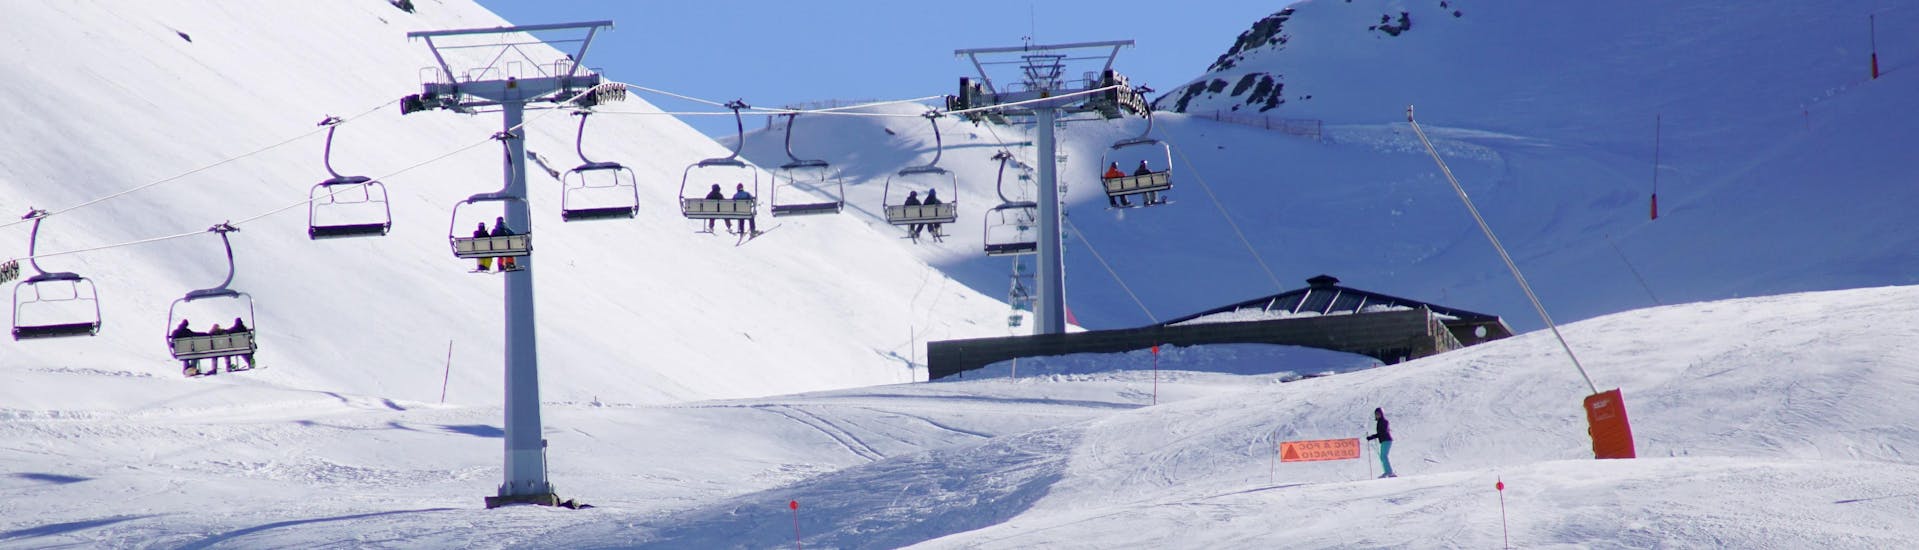 Una imagen de una de las pistas de esquí de la estación de esquí catalana de Vall de Boí, donde los visitantes pueden reservar clases de esquí con las escuelas de esquí locales.